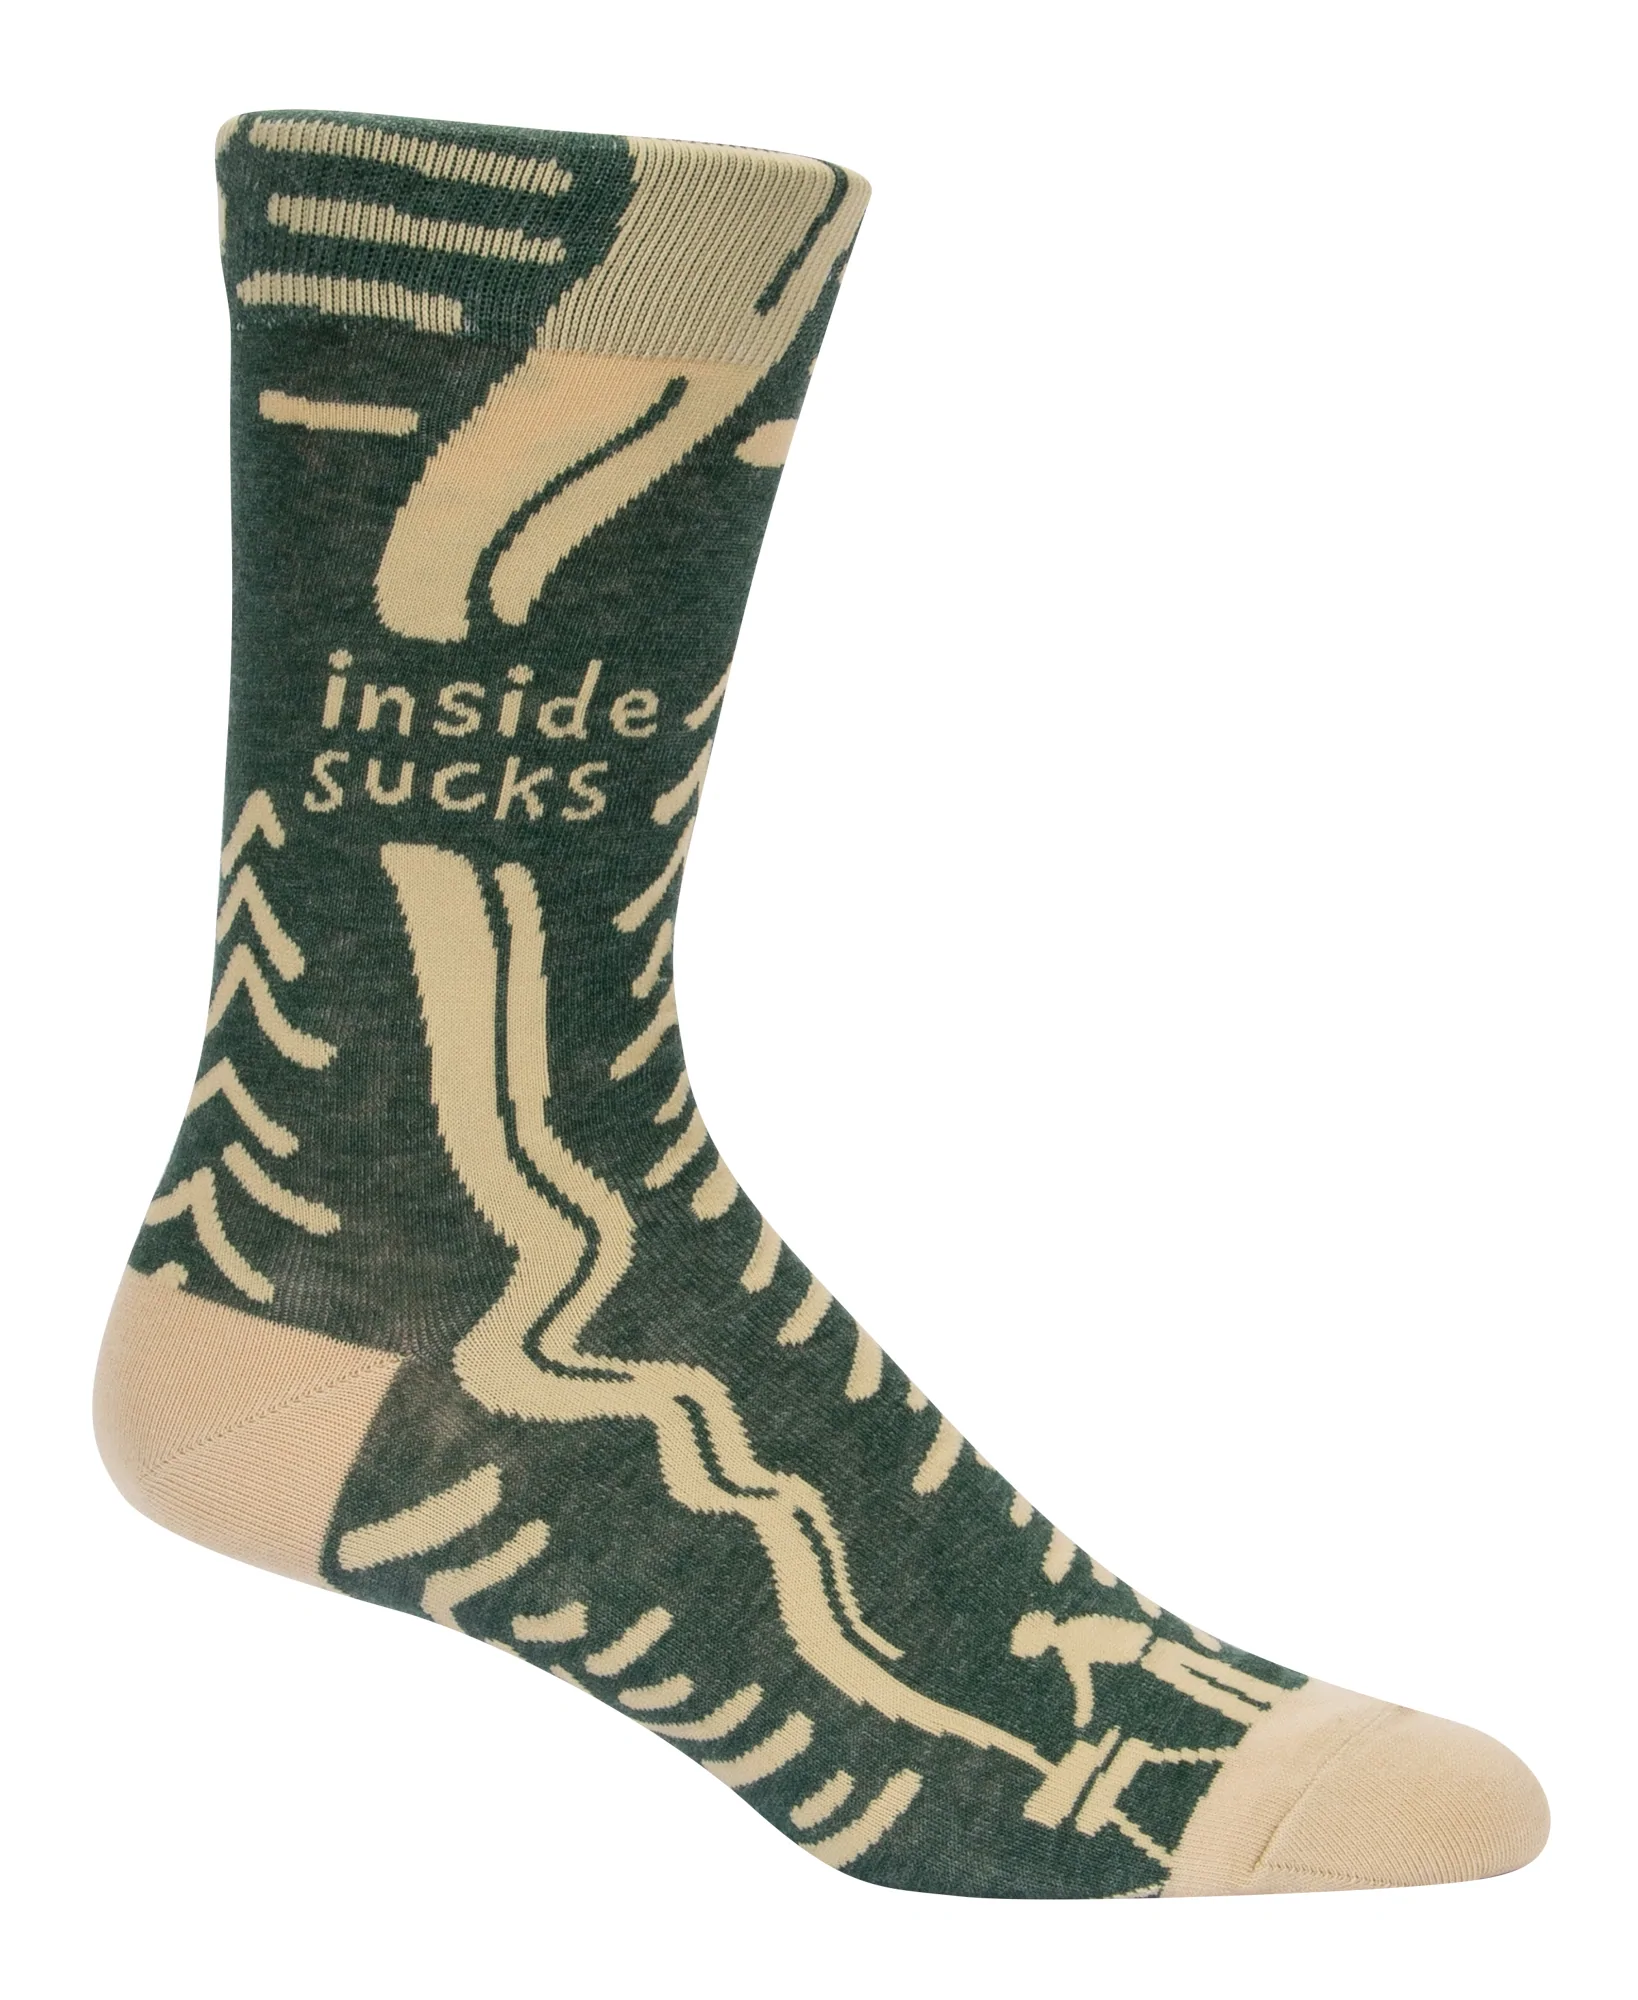 Men's Socks - Inside Sucks